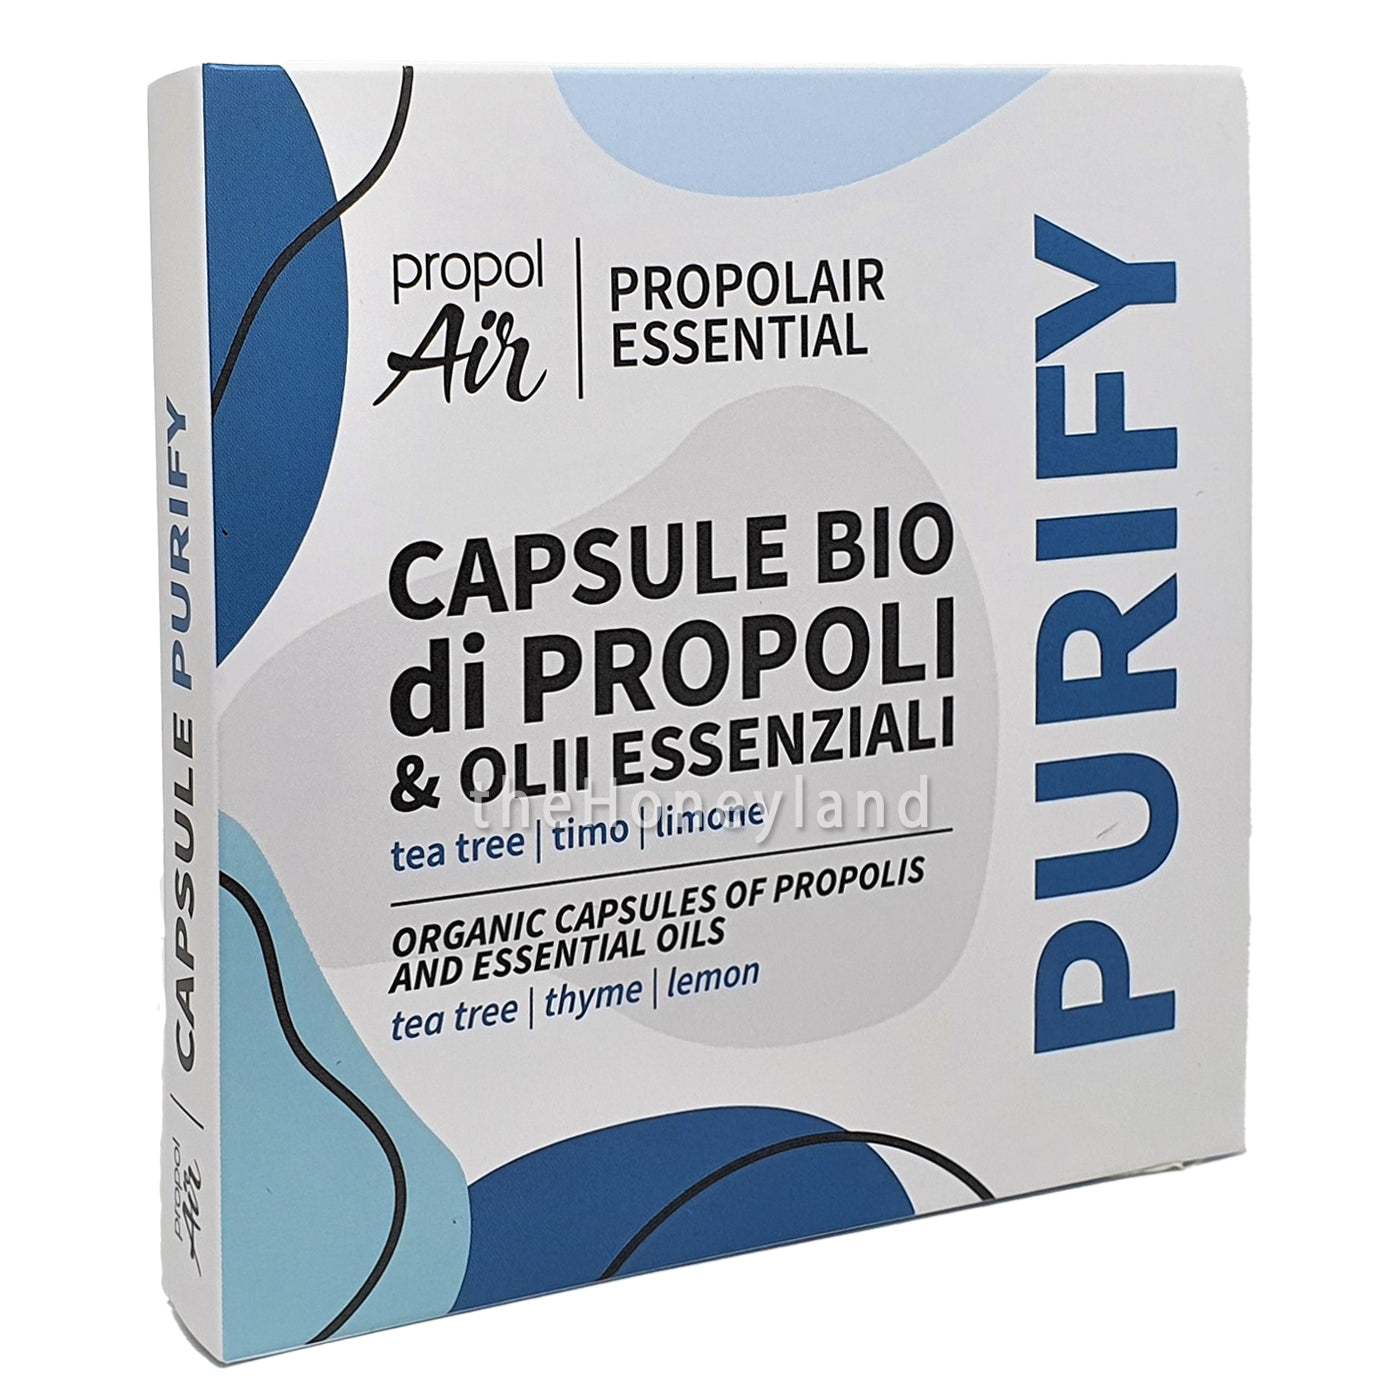 Capsule Propoli Bio Purify con oli essenziali di tea tree, timo e limone